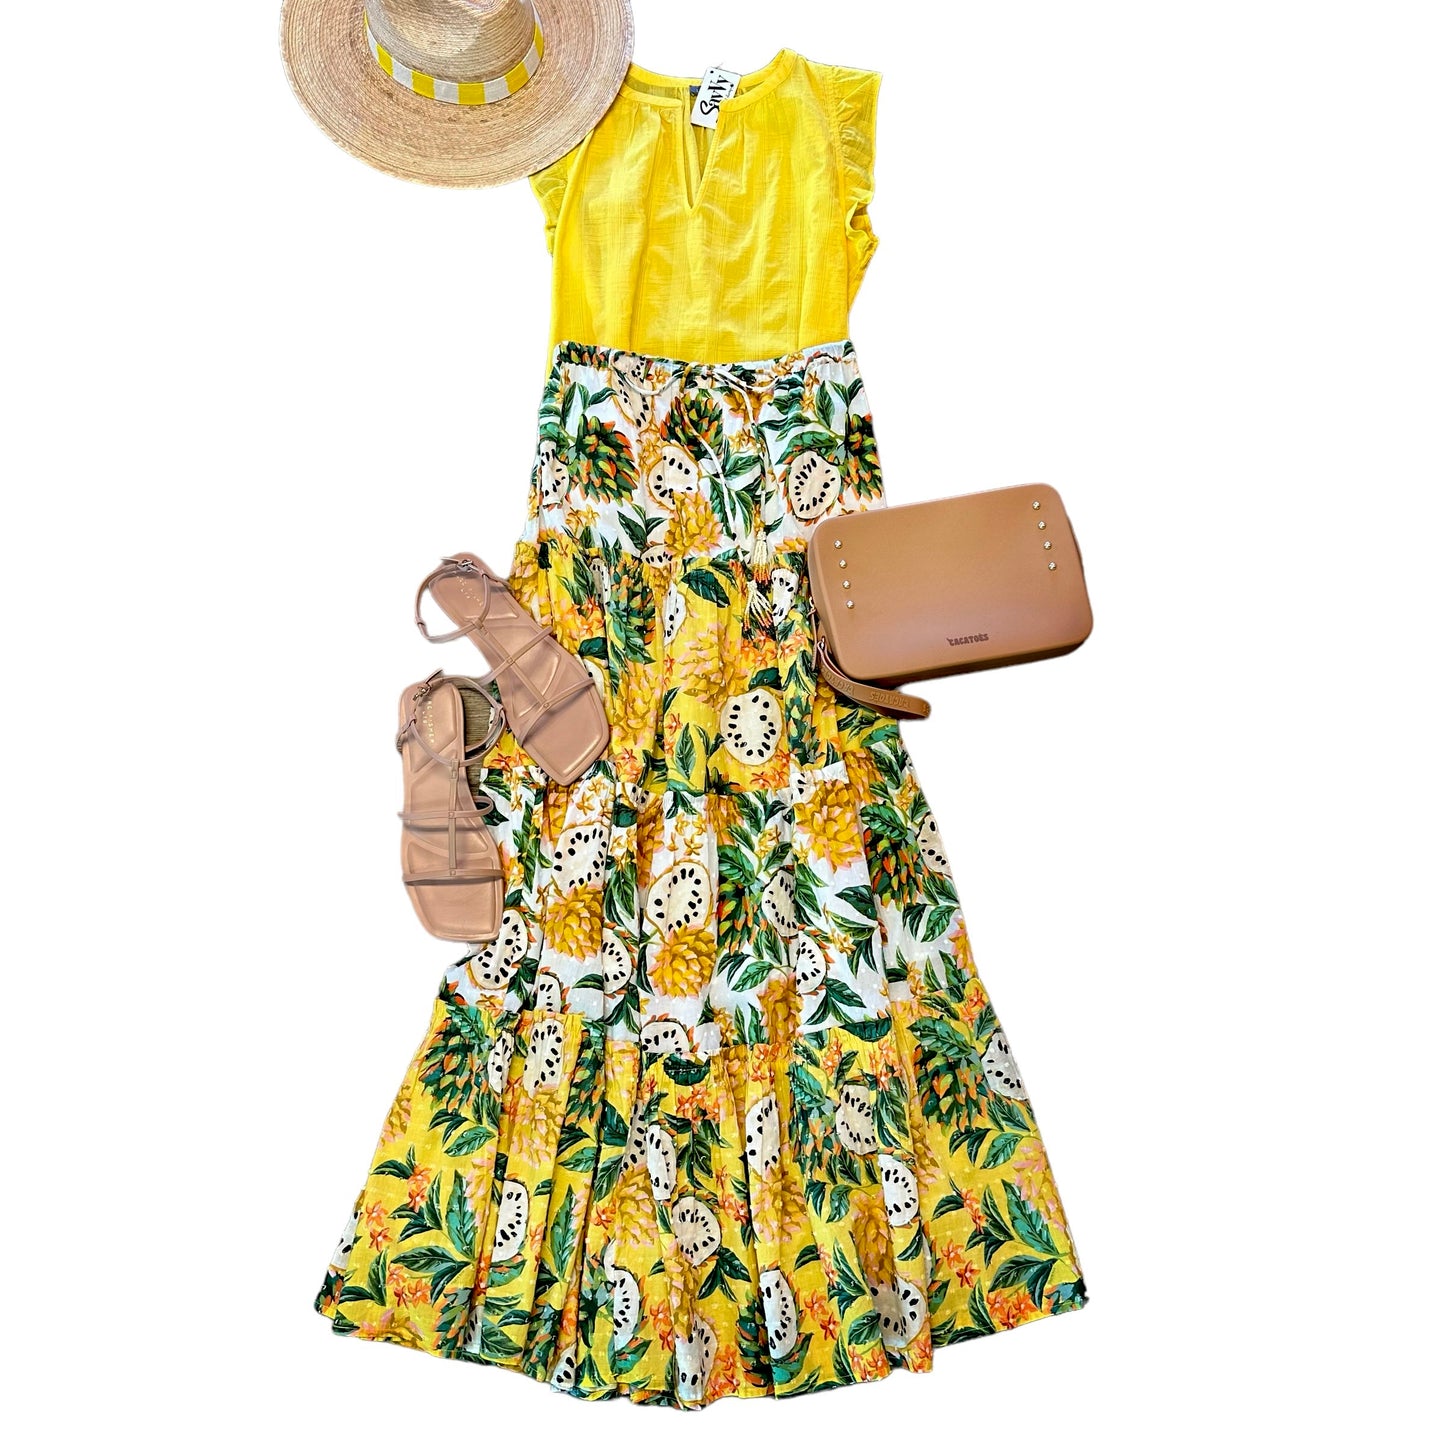 Biriba Mix Maxi Skirt in yellow/ivory by Farm Rio